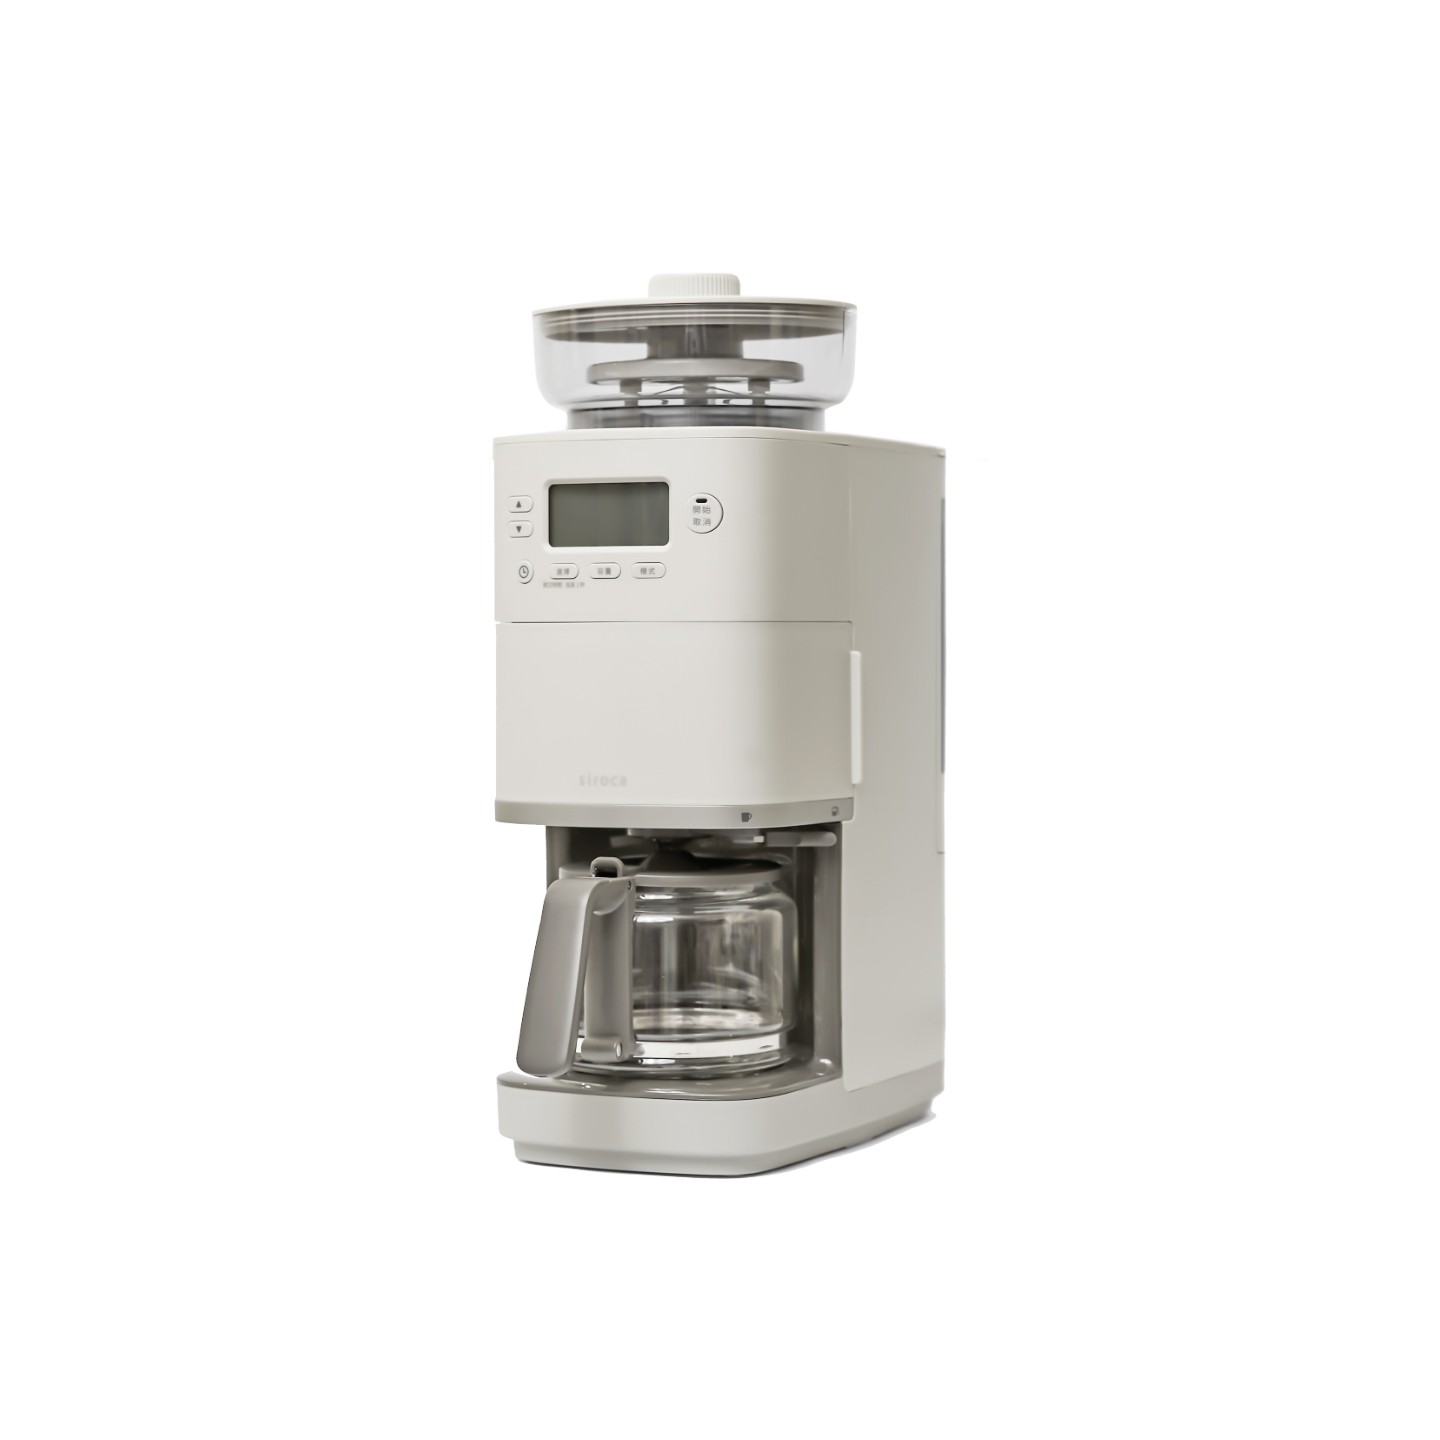 新品上市】SC-C2510 全自動石臼式研磨咖啡機淺灰色送專用濾網| 廚房 